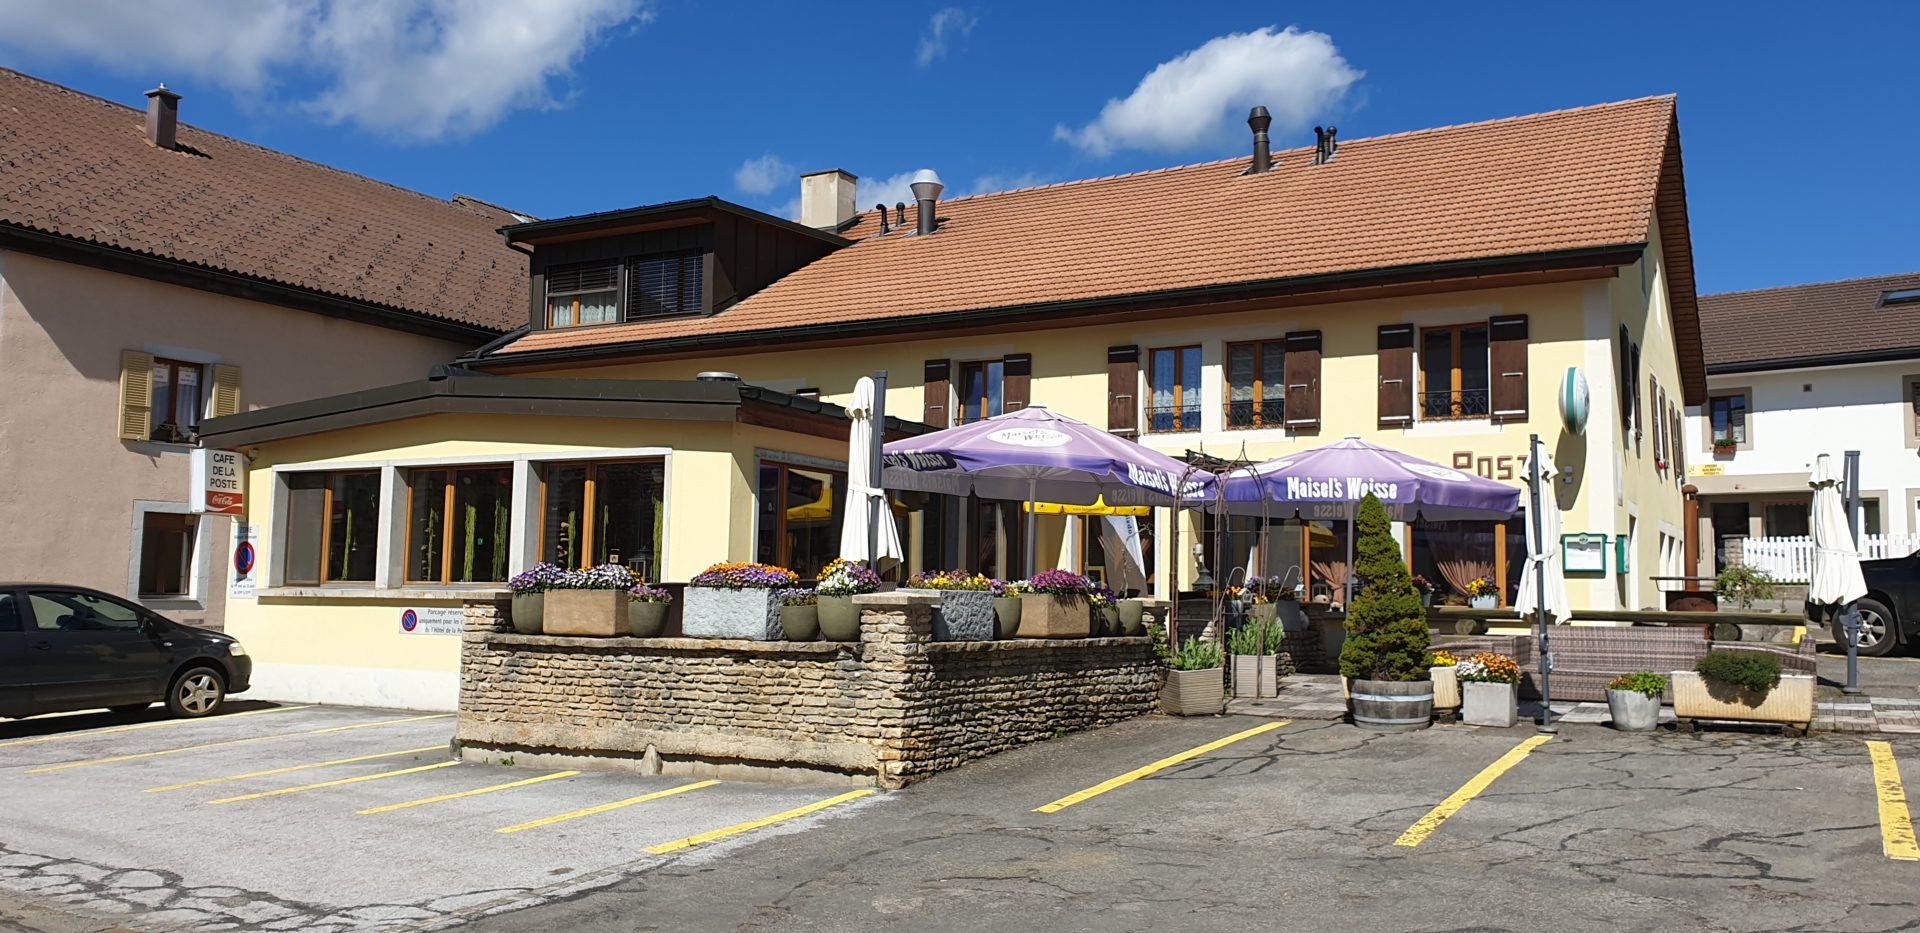 Hôtel Restaurant de la Poste à la Côte-aux-Fées cherche son futur exploitant